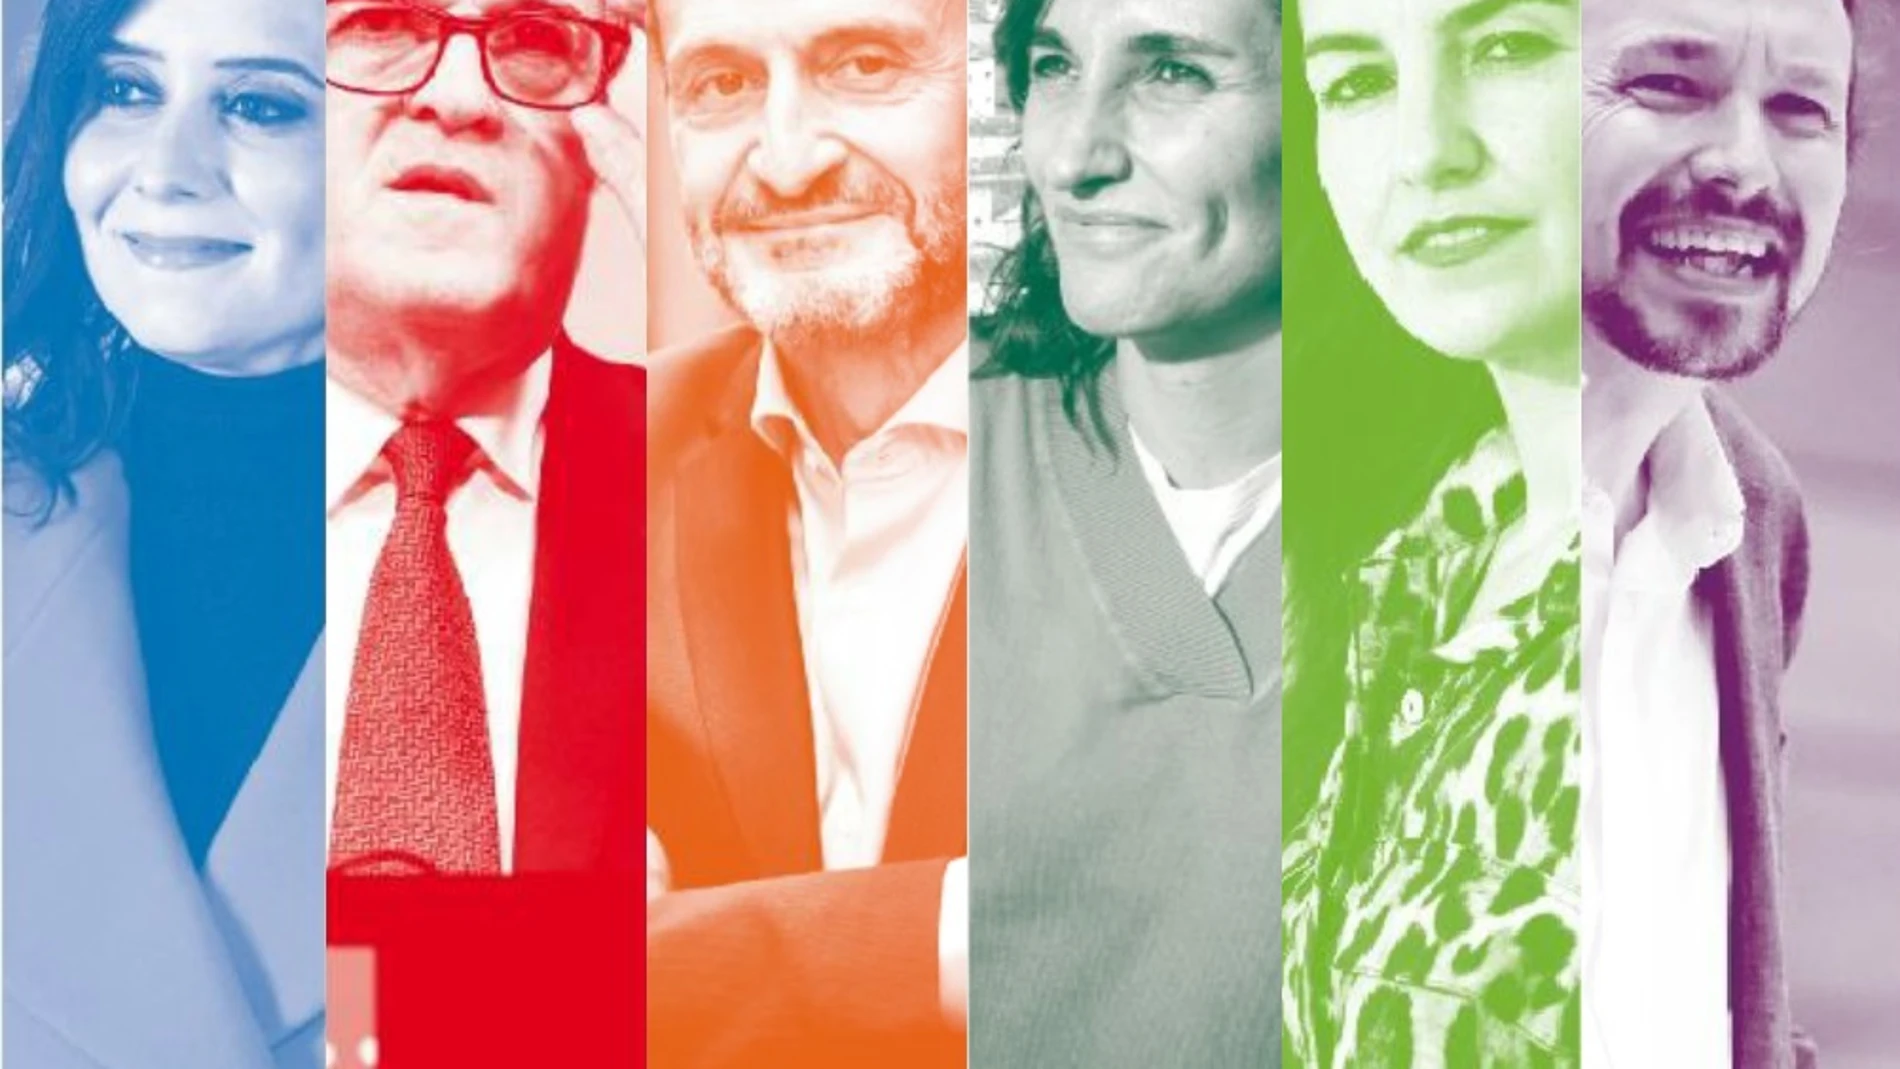 Los seis candidatos en las elecciones del 4 de mayo en Madrid